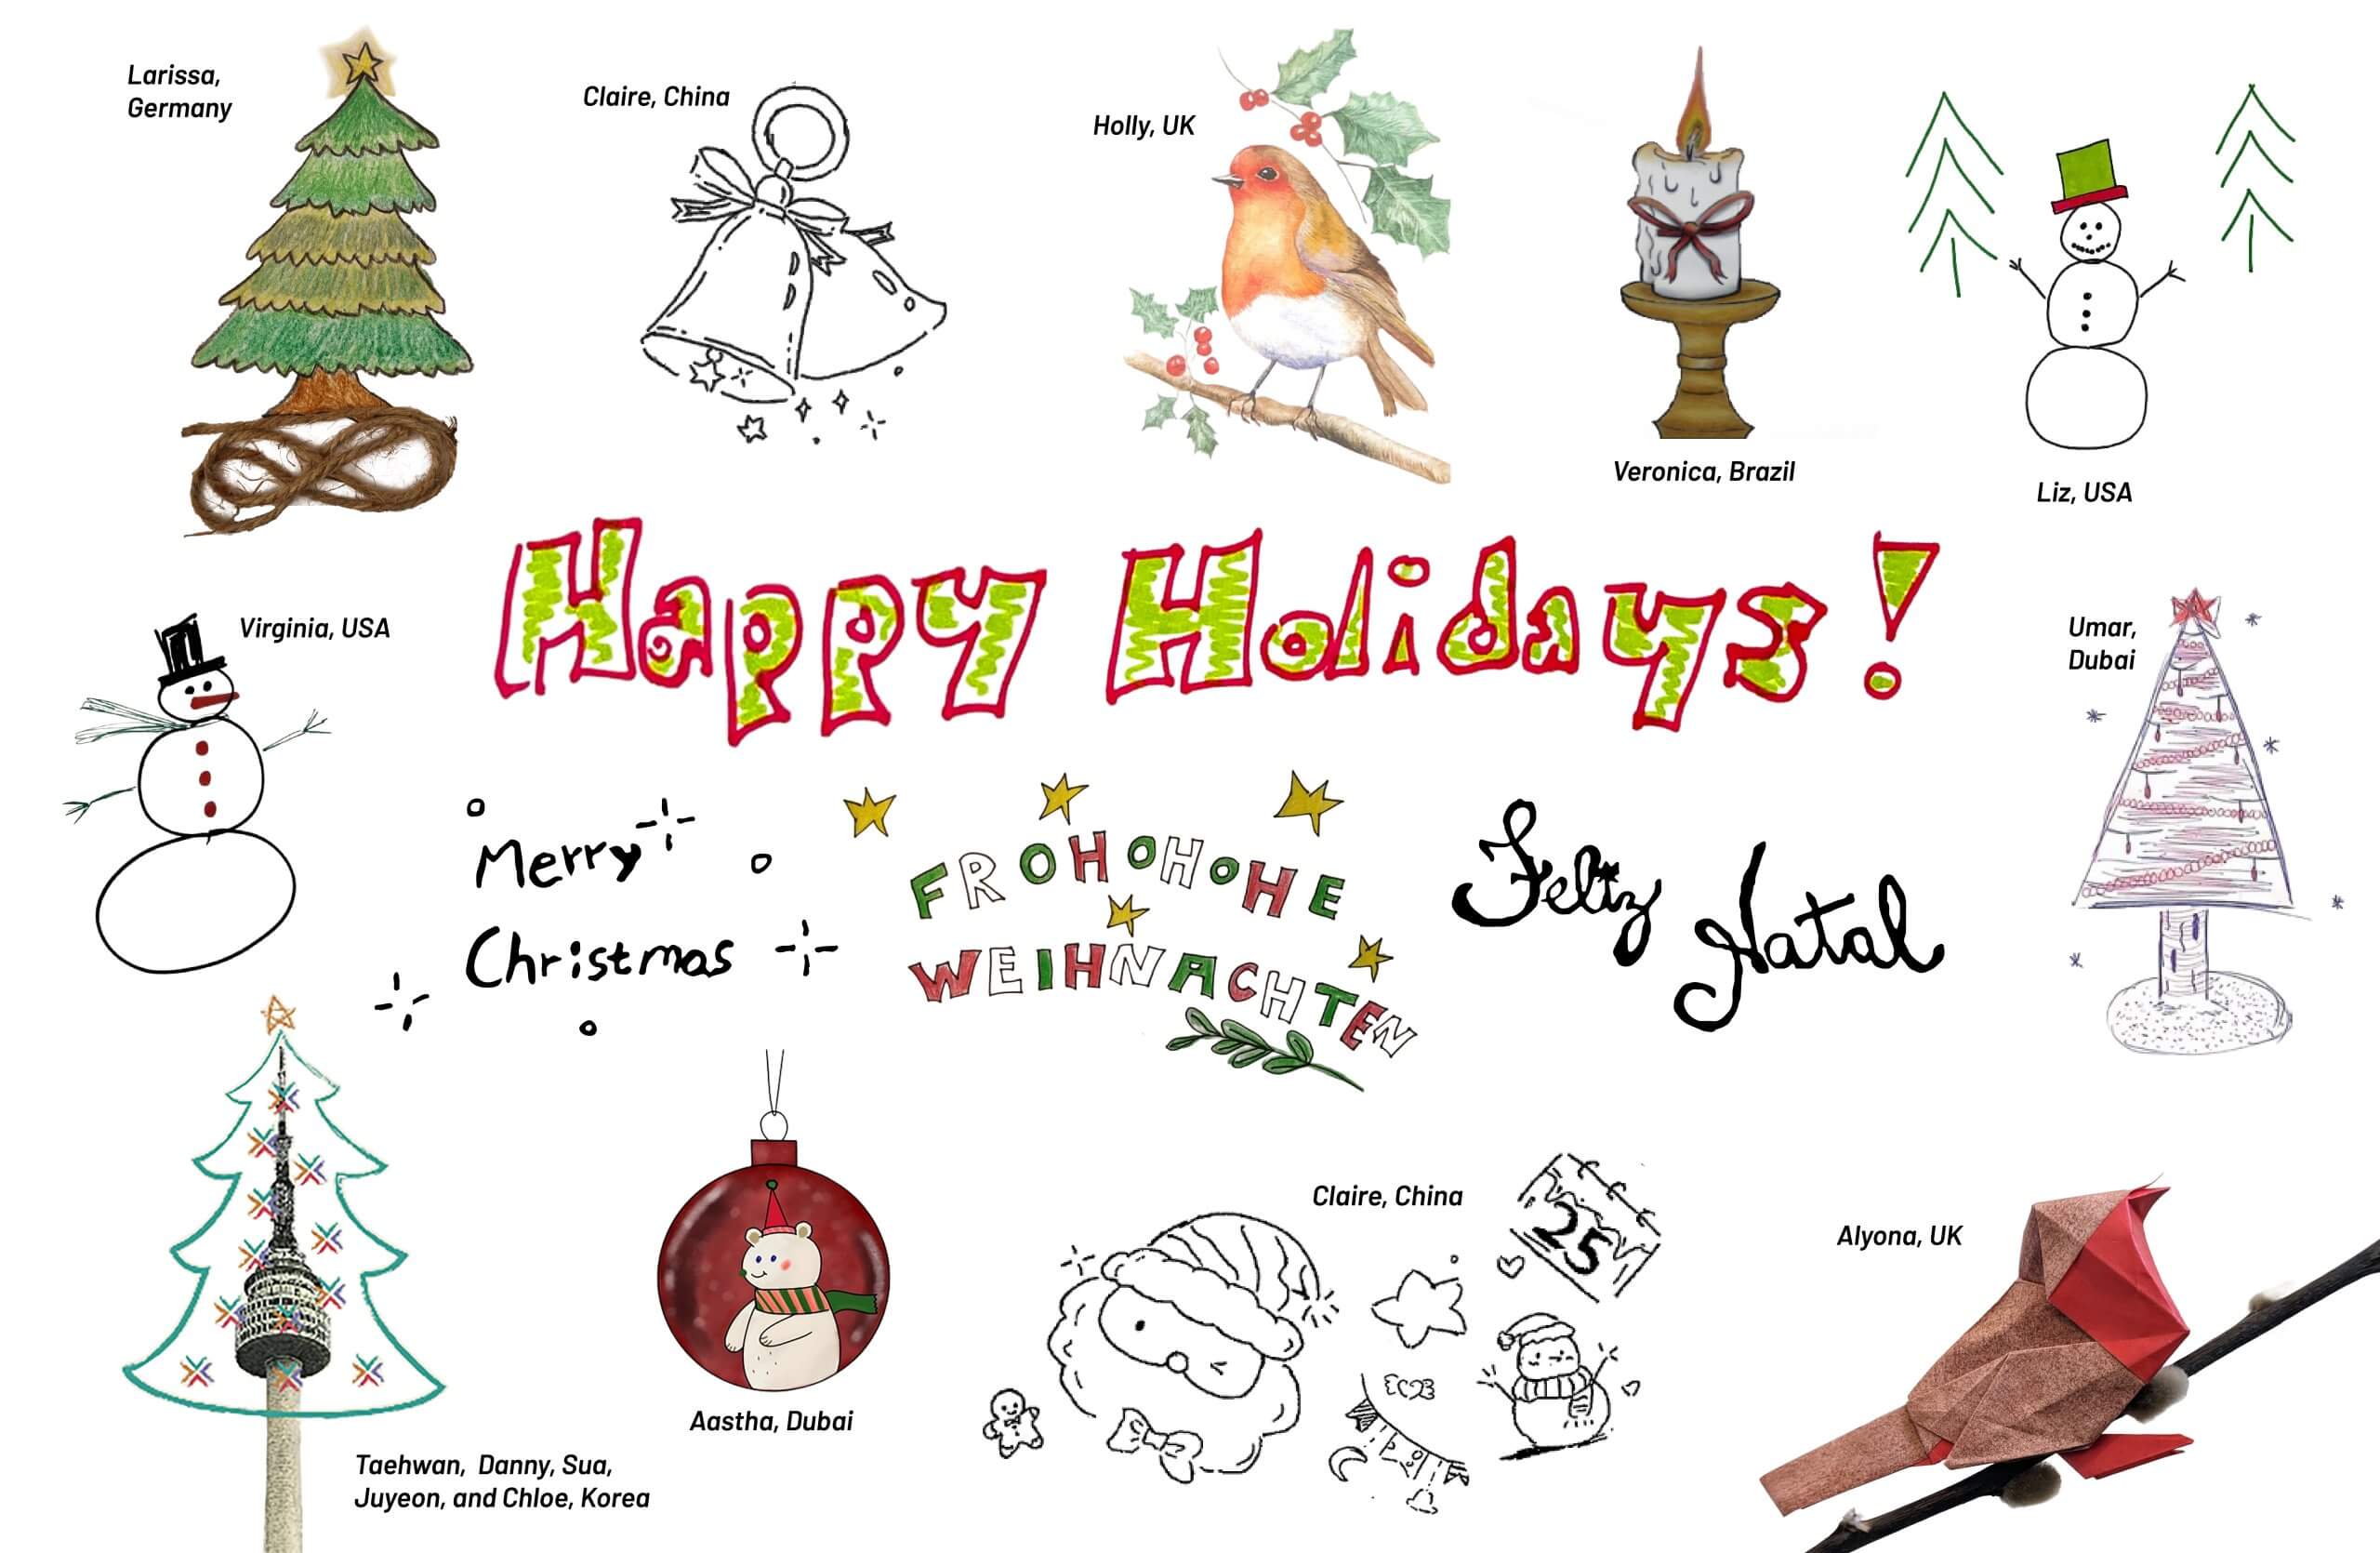 图片以白色为背景，围绕 "节日快乐、圣诞快乐、Frohohohe Weihnachten 和 Feliz Natal "字样，汇集了彩色和黑白手绘节日/季节主题图案。这些图案有的经过巧妙渲染，有的则风格稚拙，其中包括三棵圣诞树（一棵用彩色铅笔绘制，一棵用细尖钢笔绘制）和一棵来自韩国的以南山首尔塔为主题的数字圣诞树。还有两个雪人、两只知更鸟（其中一只是折纸制作的）、一支蜡烛、一个铃铛、一个眨眼的圣诞老人，最后是一个红色小饰品，里面有一只戴着围巾和帽子的北极熊。作品的整体感觉是有趣、喜庆和手工制作。